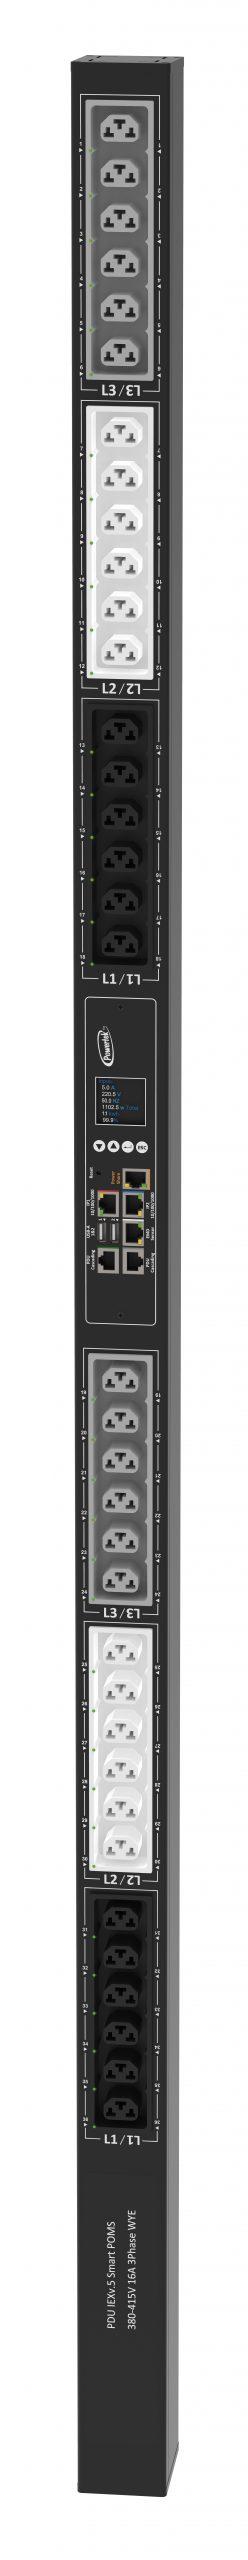 Powertek Intelligent PDU 380-415V, 3 fase, 16amp, låsning af power kabler C13/C19 kombination i samme udtag, 36 udtag redundant netværks mulighed, OLED display, overvågning af  sikringer